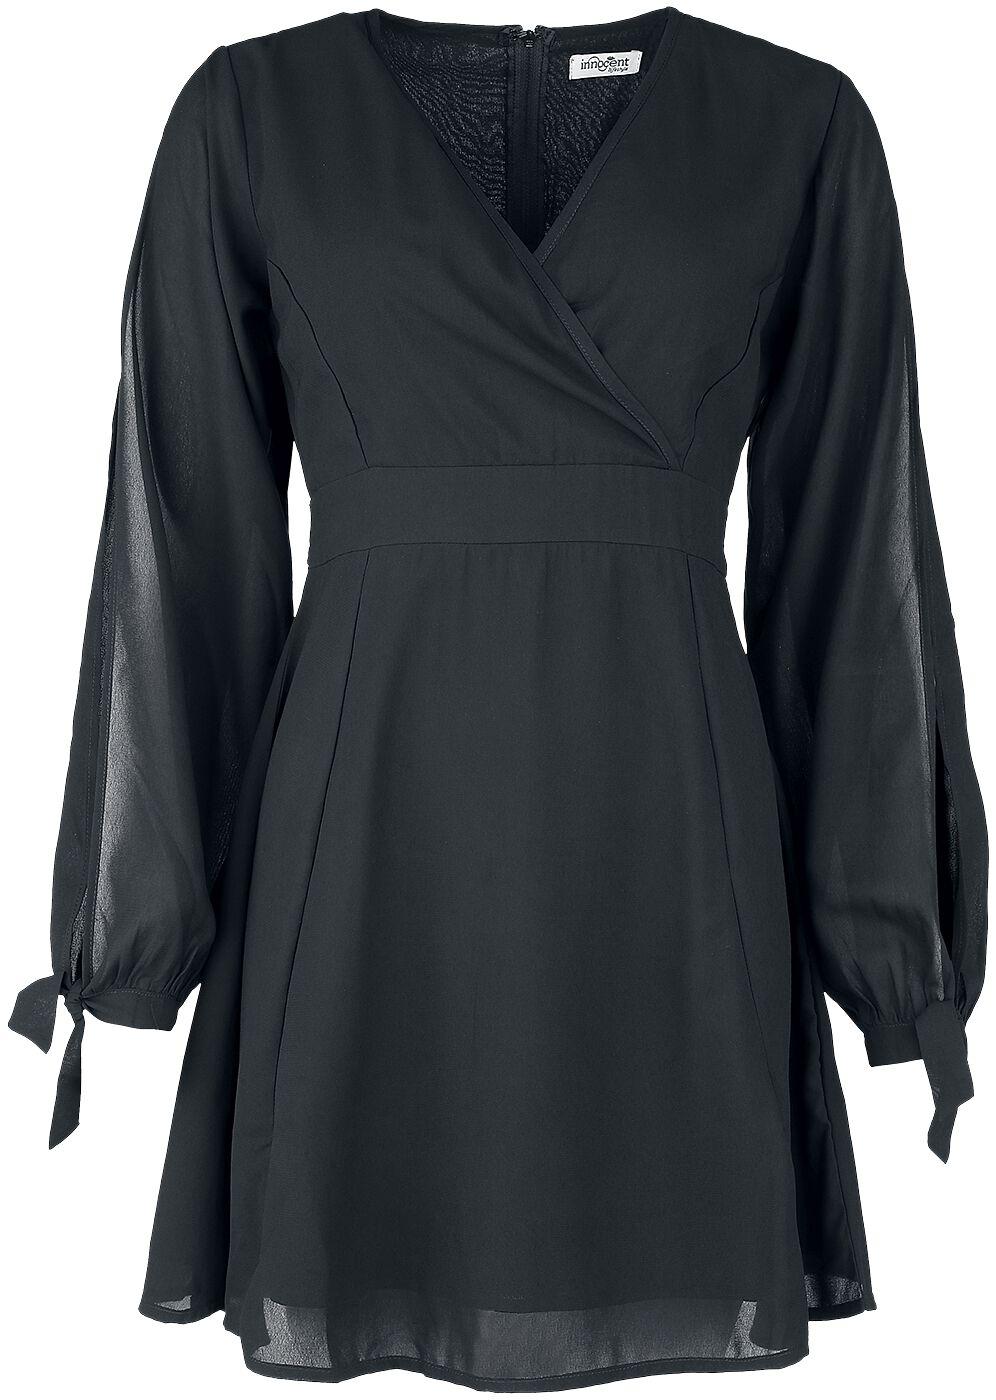 Innocent - Gothic Kurzes Kleid - Opal Dress - XS bis 4XL - für Damen - Größe 4XL - schwarz